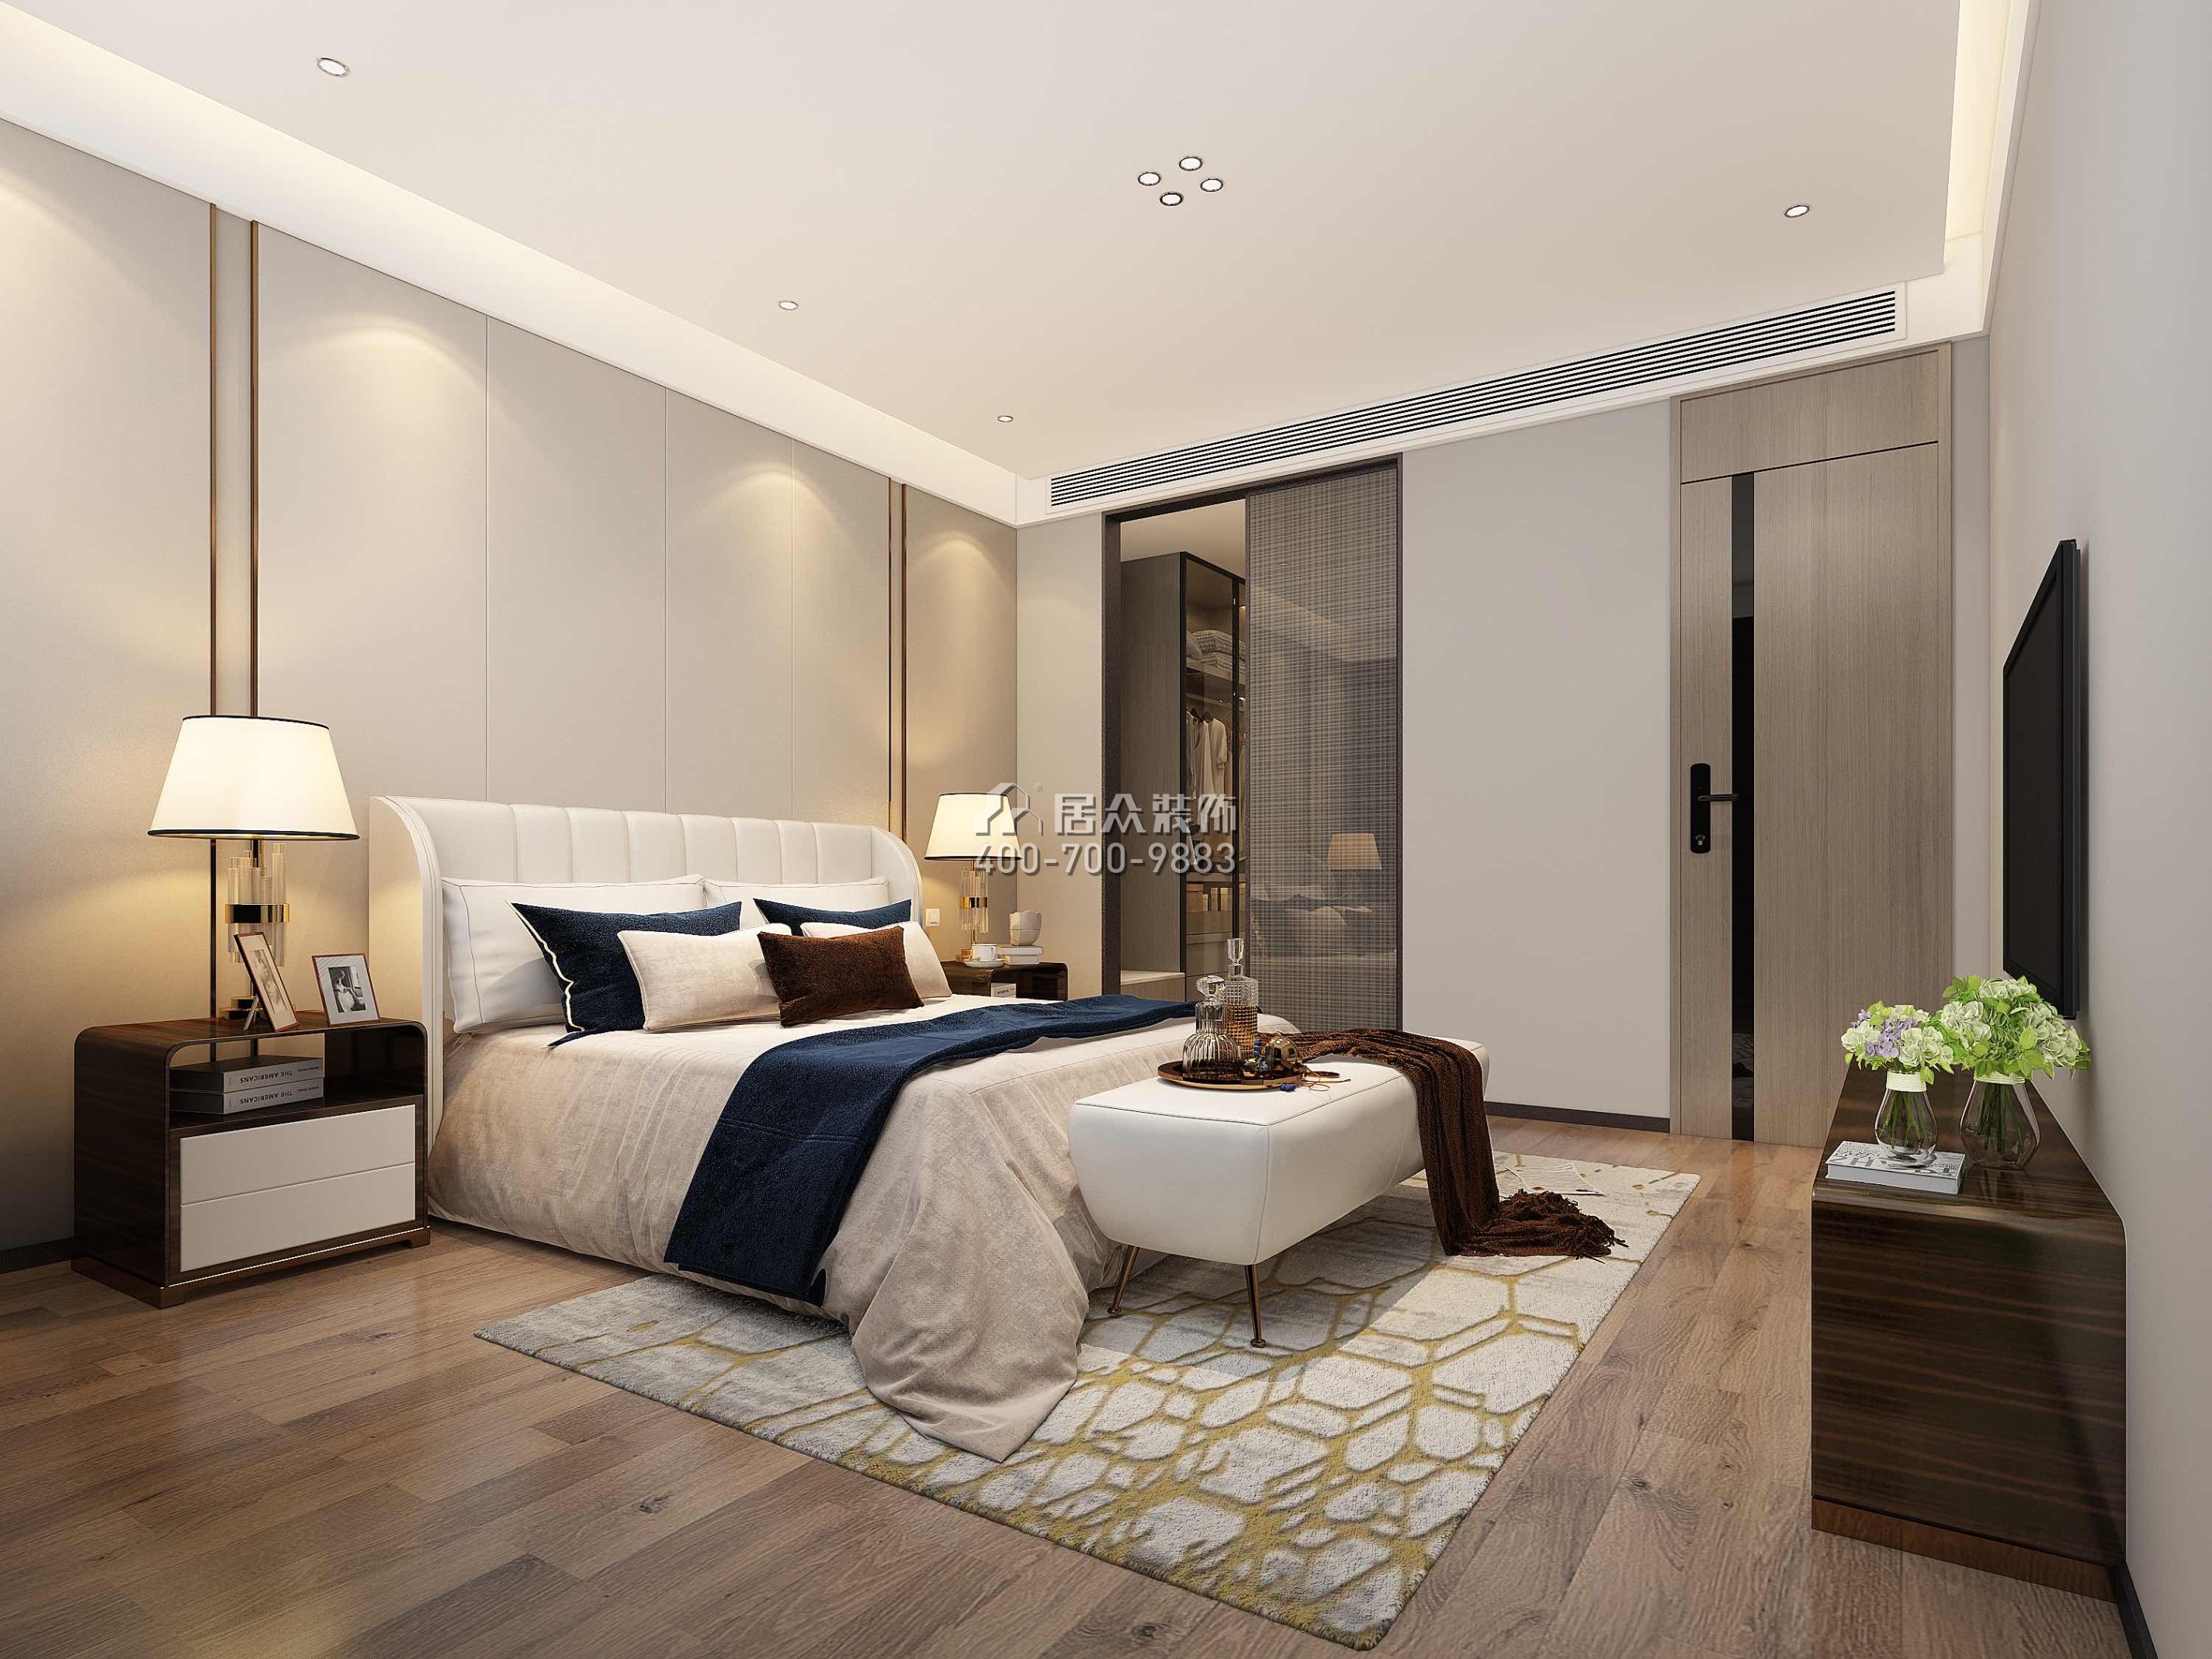 香山美墅五期170平方米現代簡約風格平層戶型臥室裝修效果圖